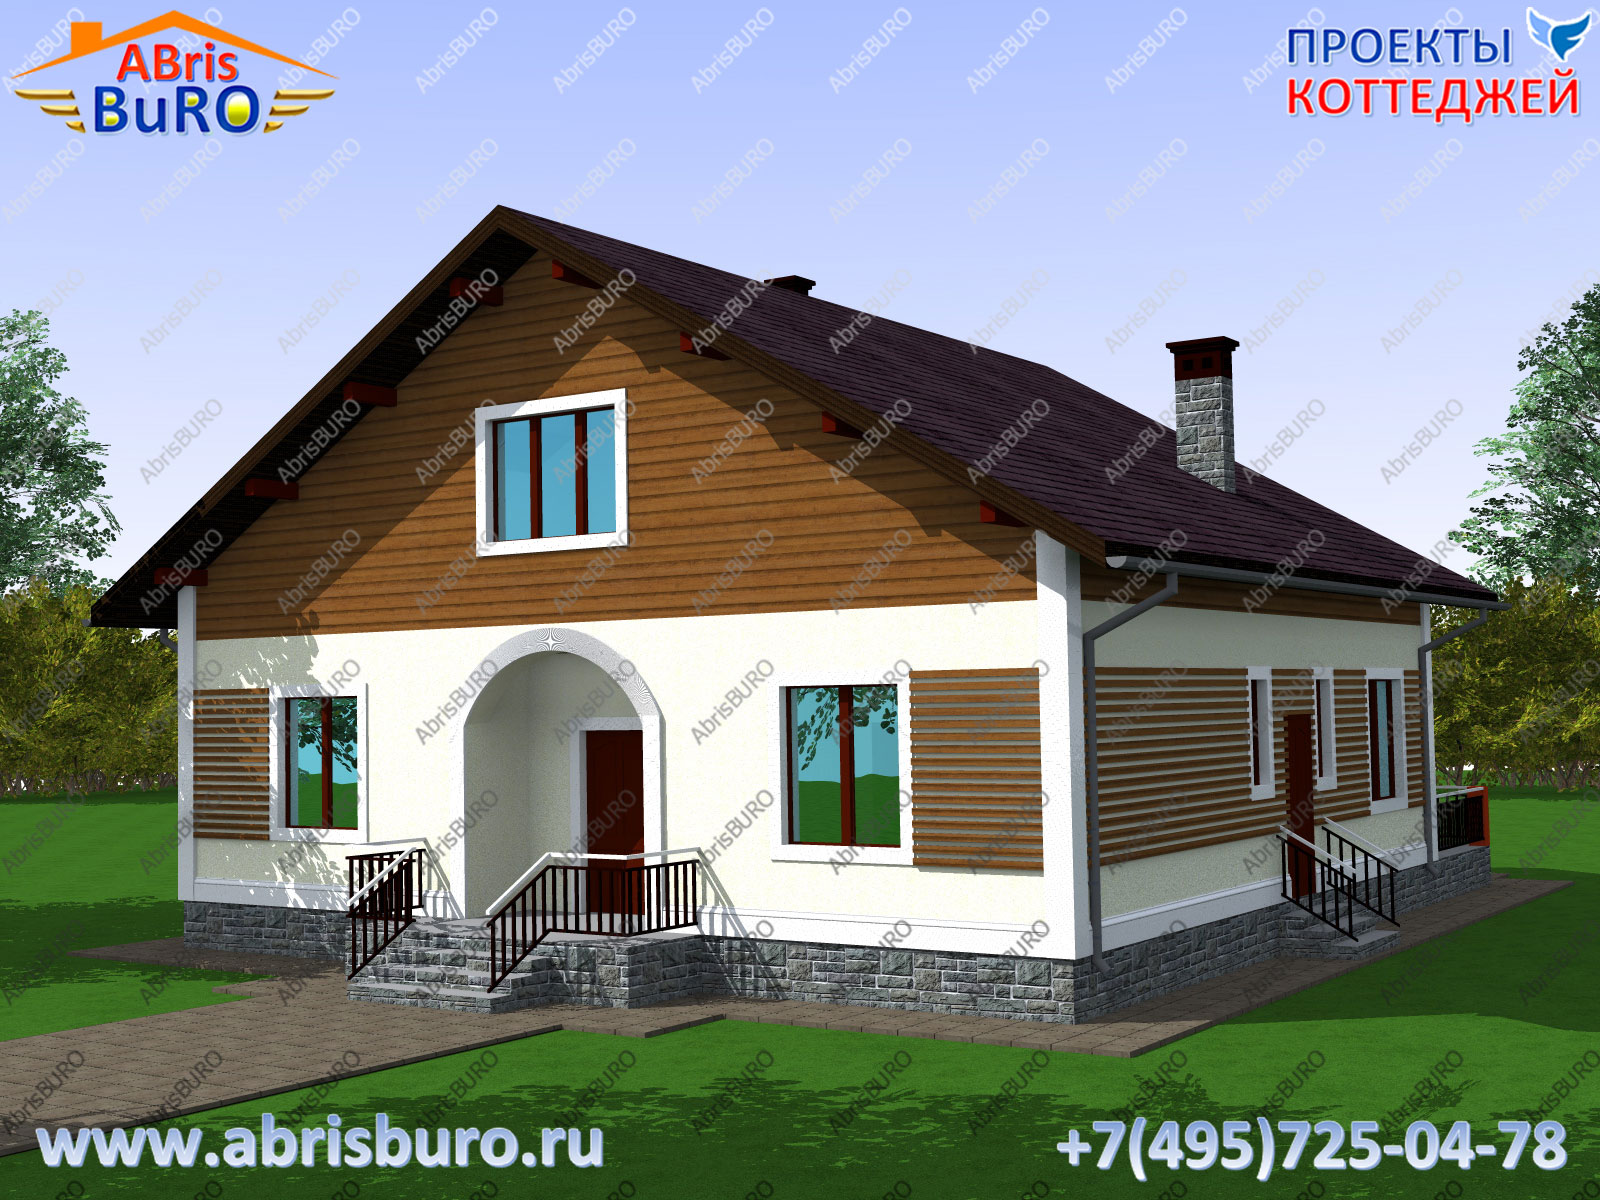 Пример дома K1651-191 в норвежском стиле на сайте www.abrisburo.ru